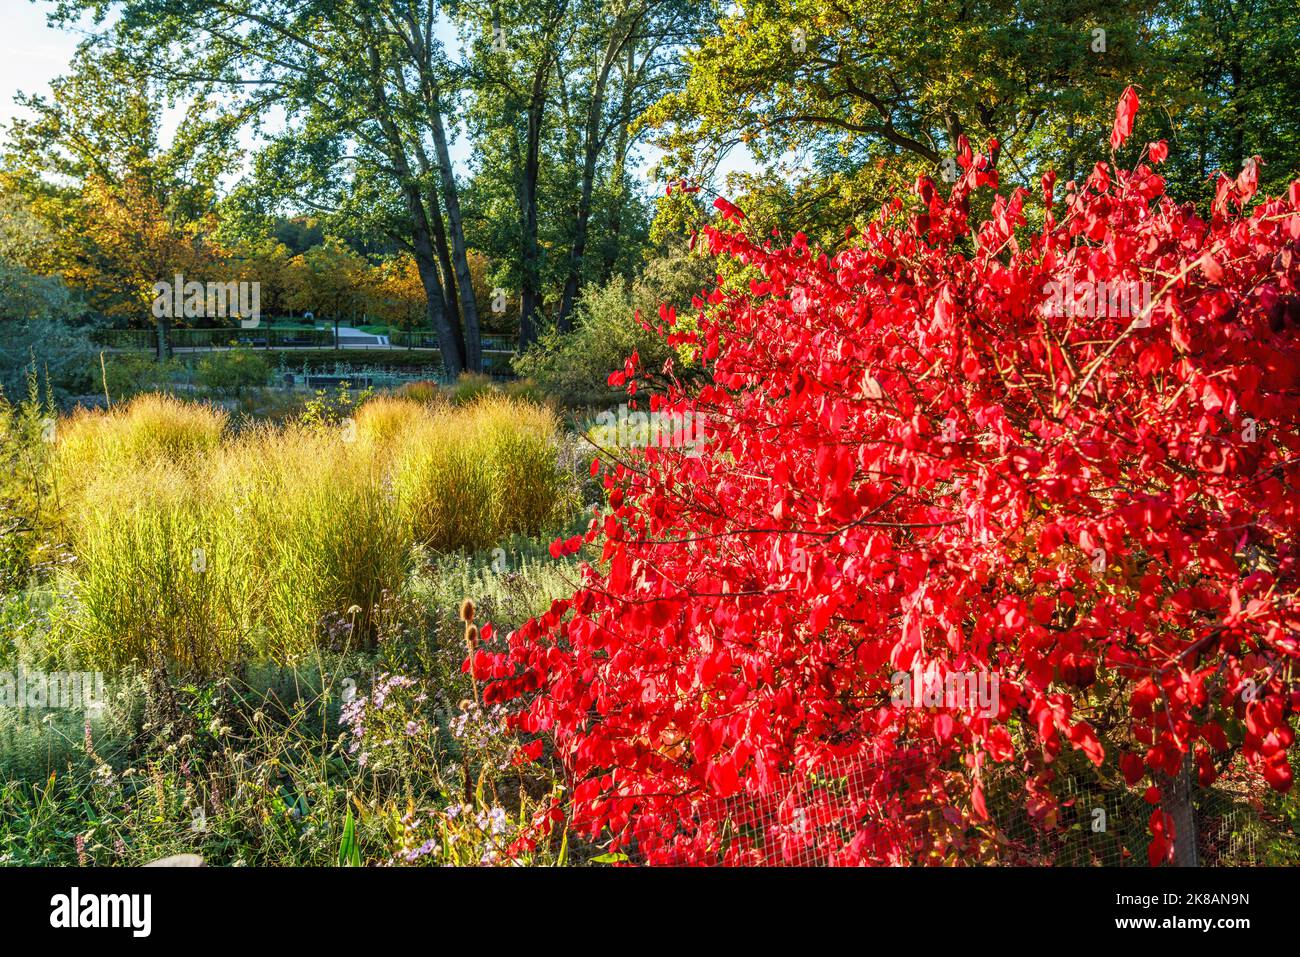 Tiergarten im Herbst, Herbstfarben, rot verfärbte Blätter, Berlin, Deutschland Stock Photo